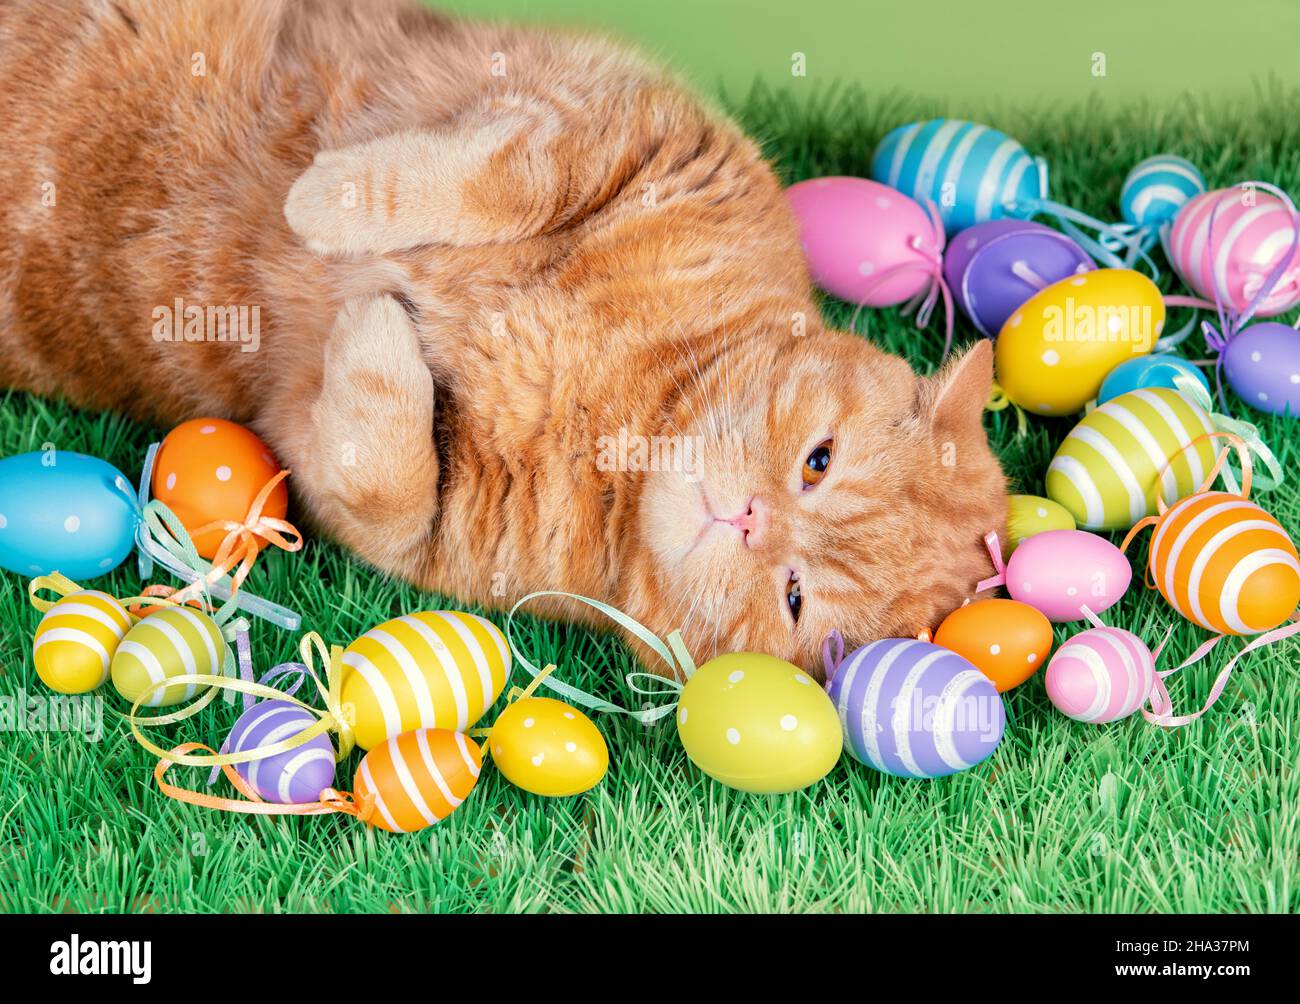 Un chat de gingembre drôle dormant sur gazon artificiel près des œufs de pâques colorés Banque D'Images